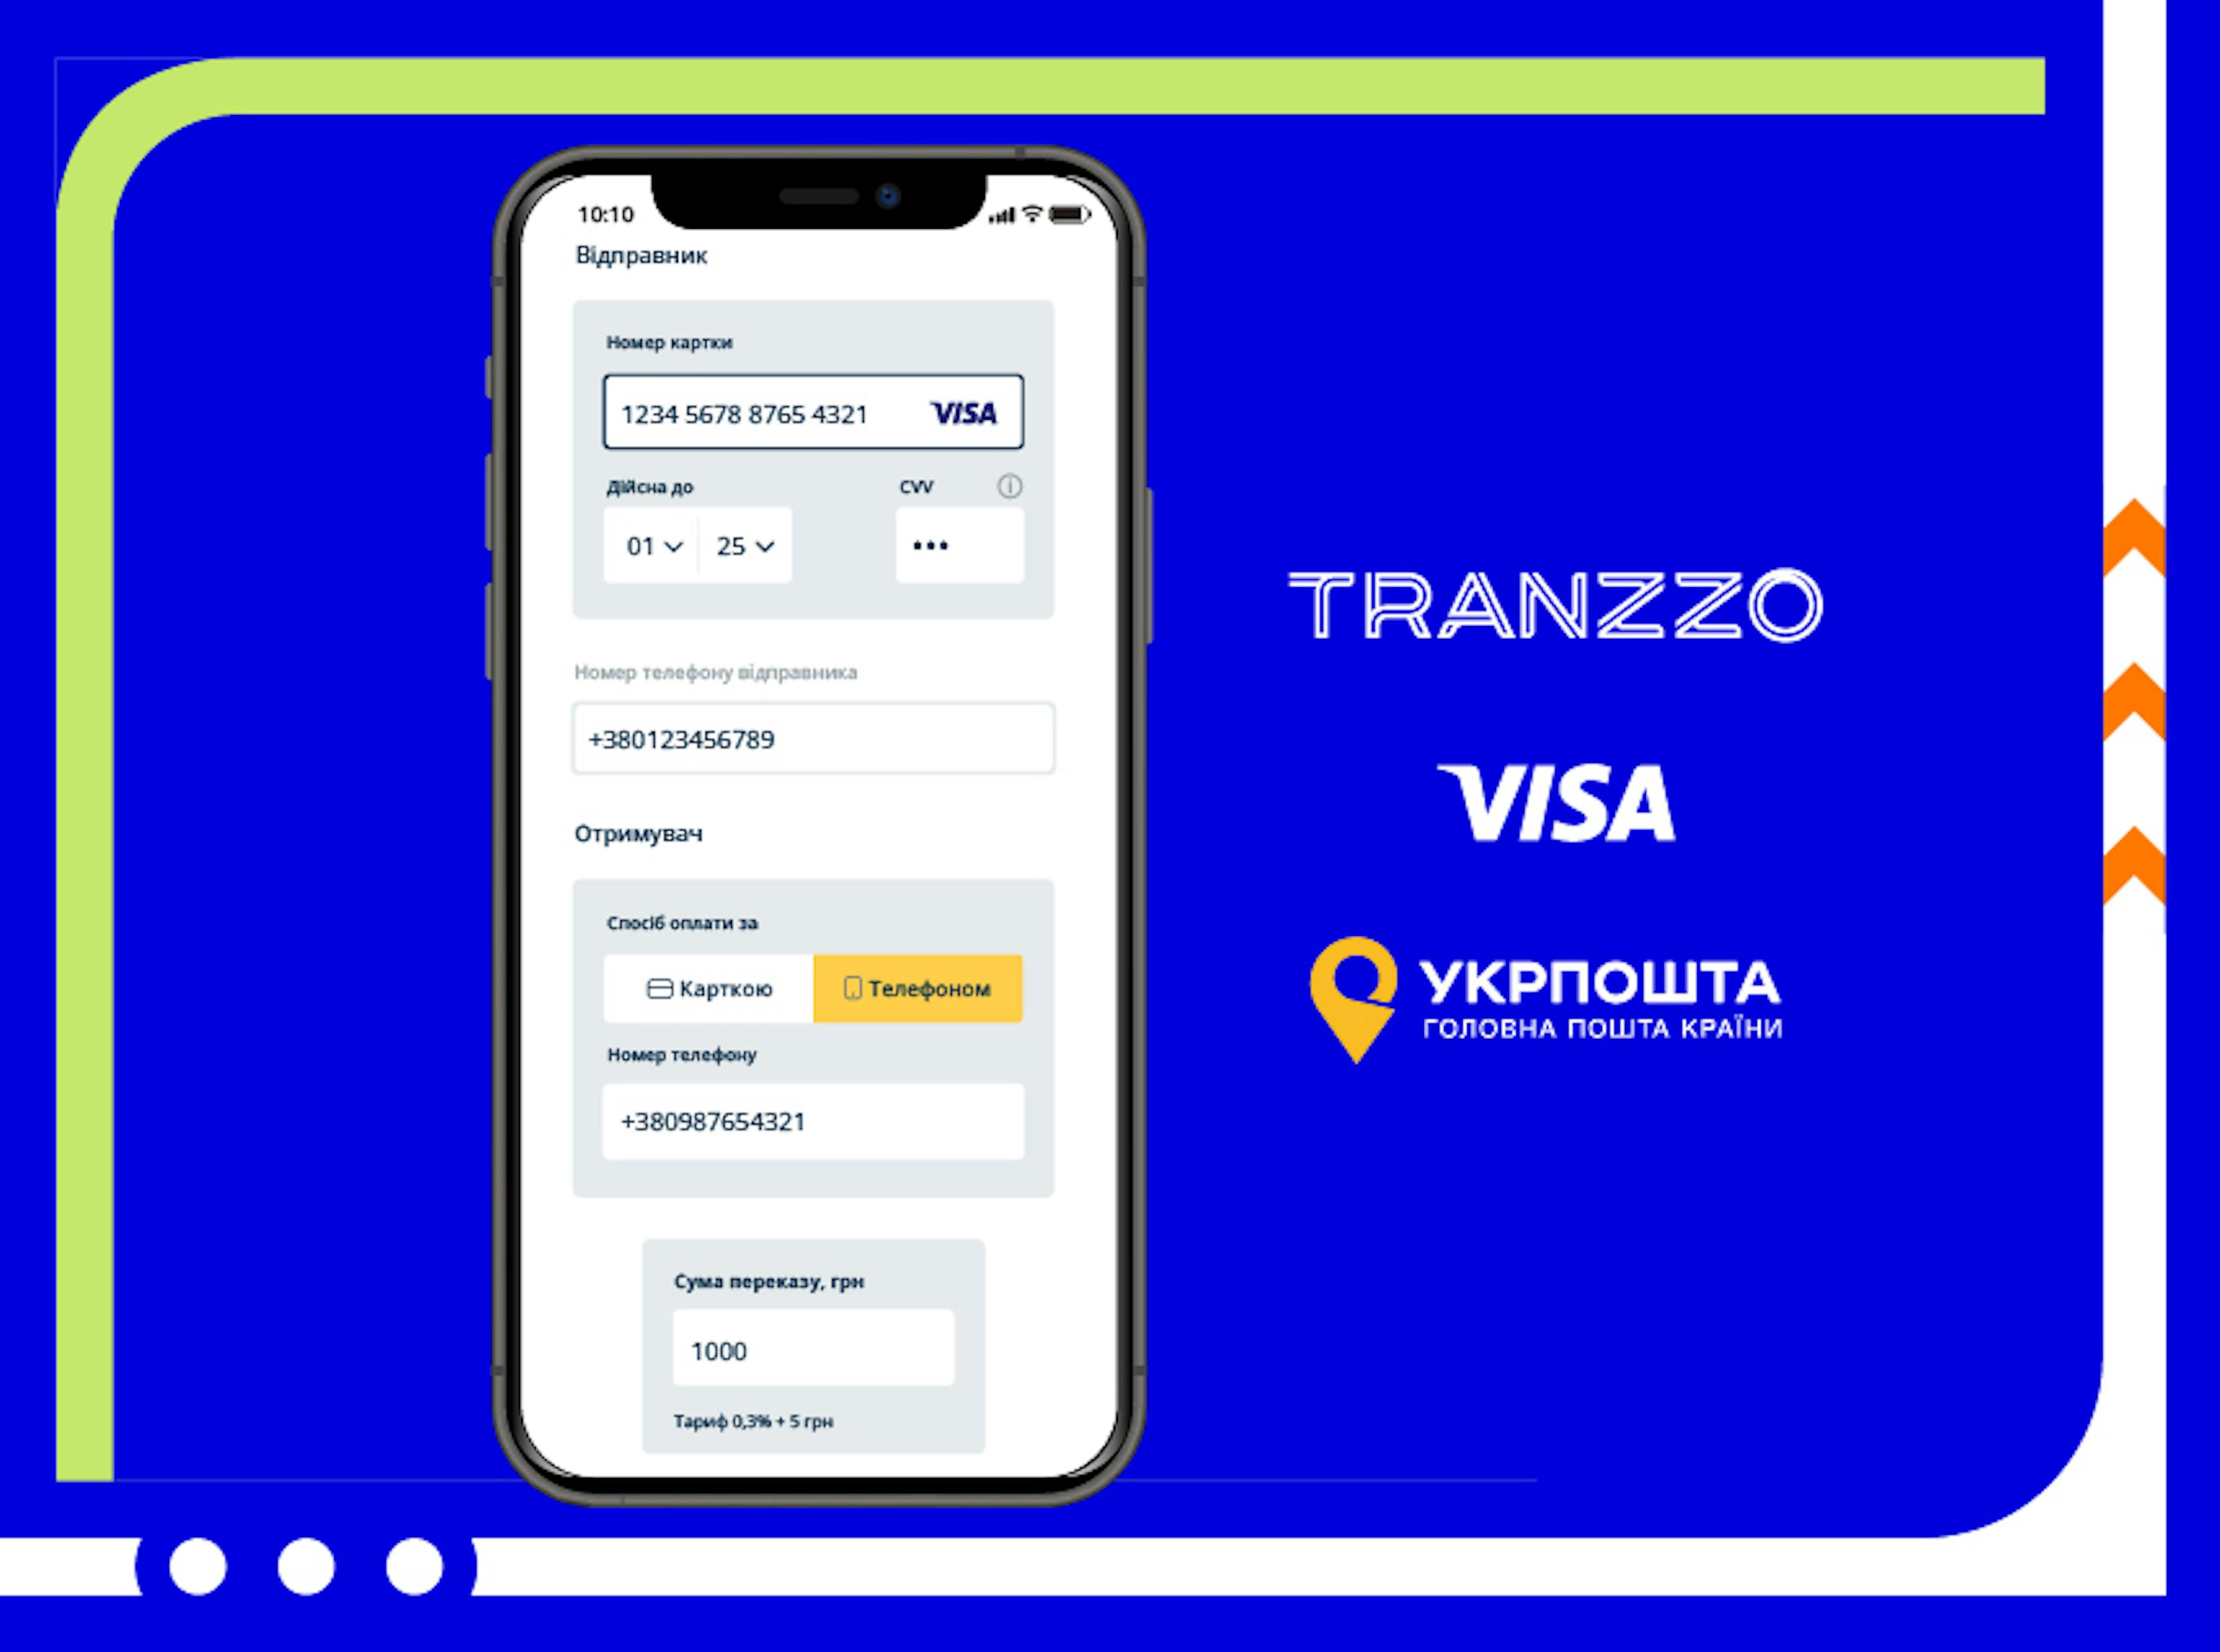 Тranzzo запустил новую платежную услугу для Укрпочты с помощью сервиса от Visa